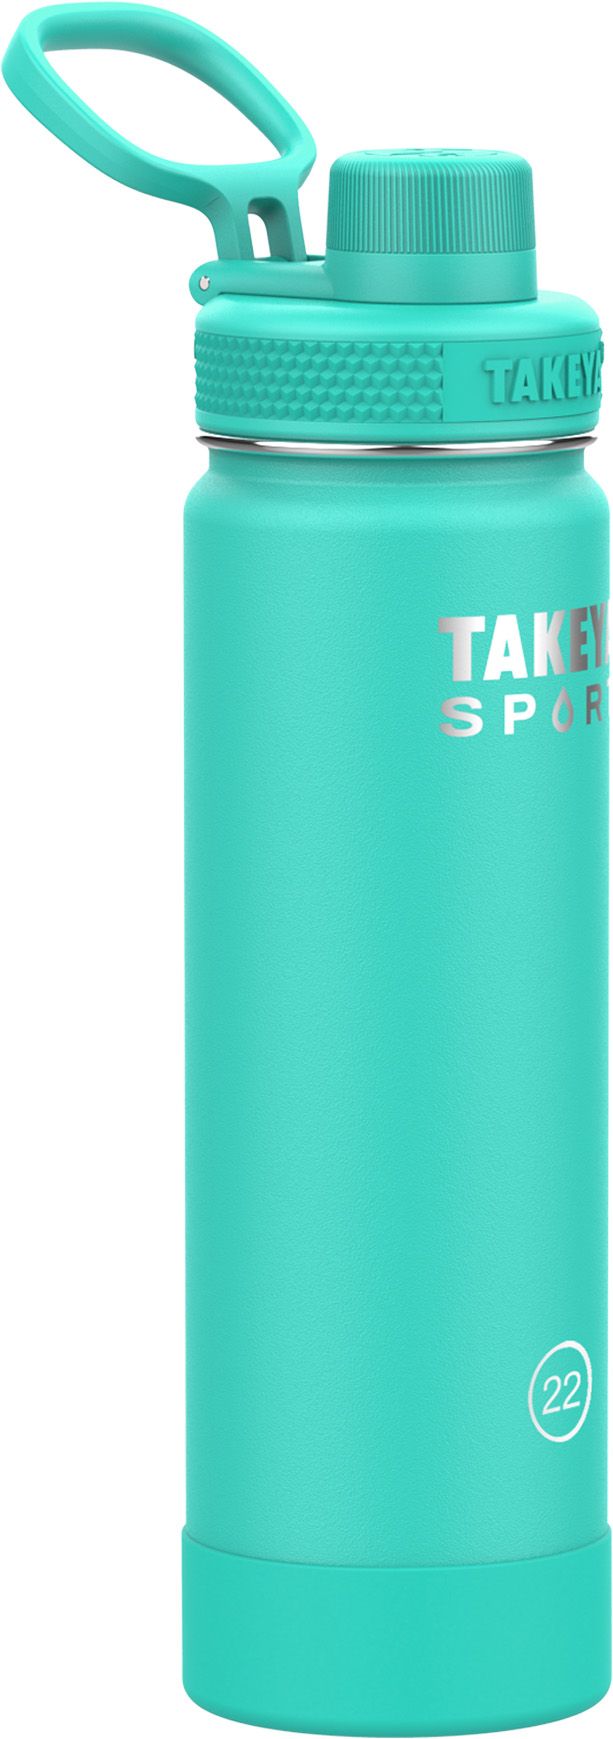 Takeya Sport 22 oz. Water Bottle with Spout Lid